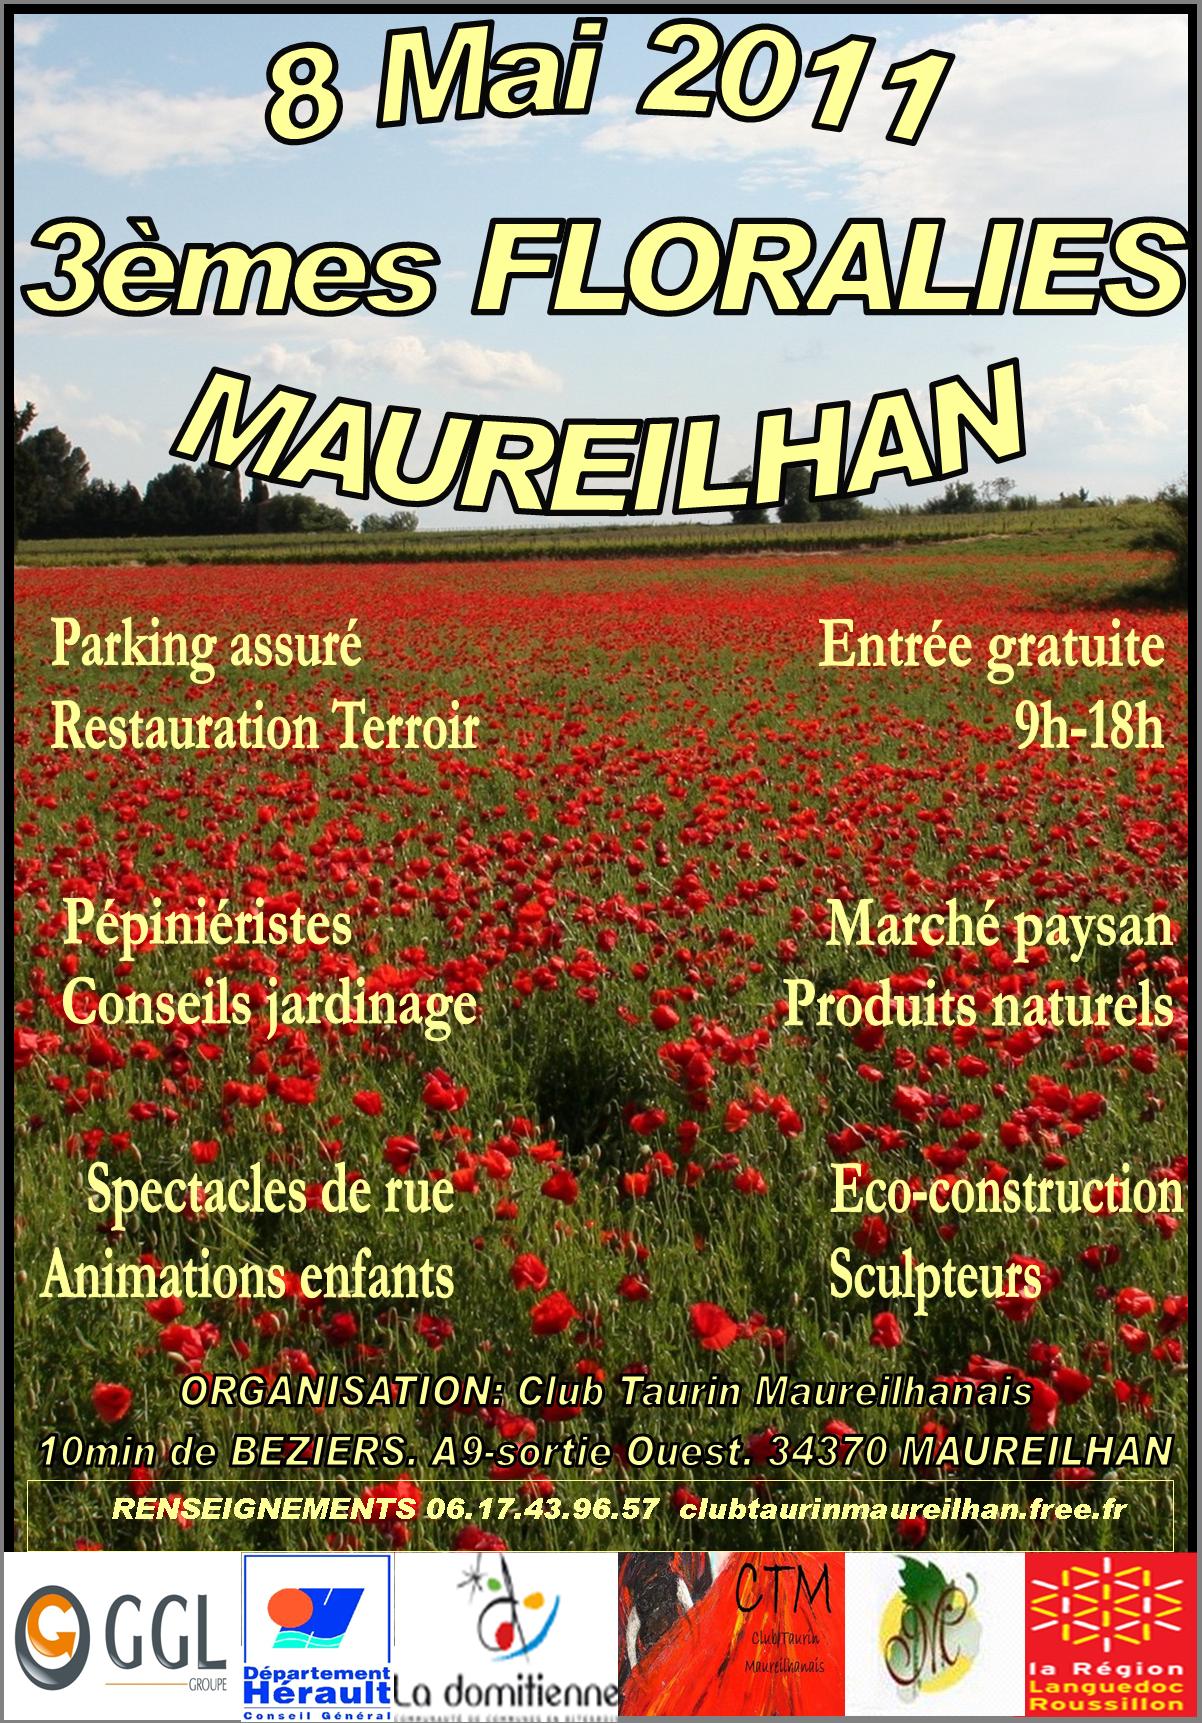 le bio guide Floralies maureilhan - 8